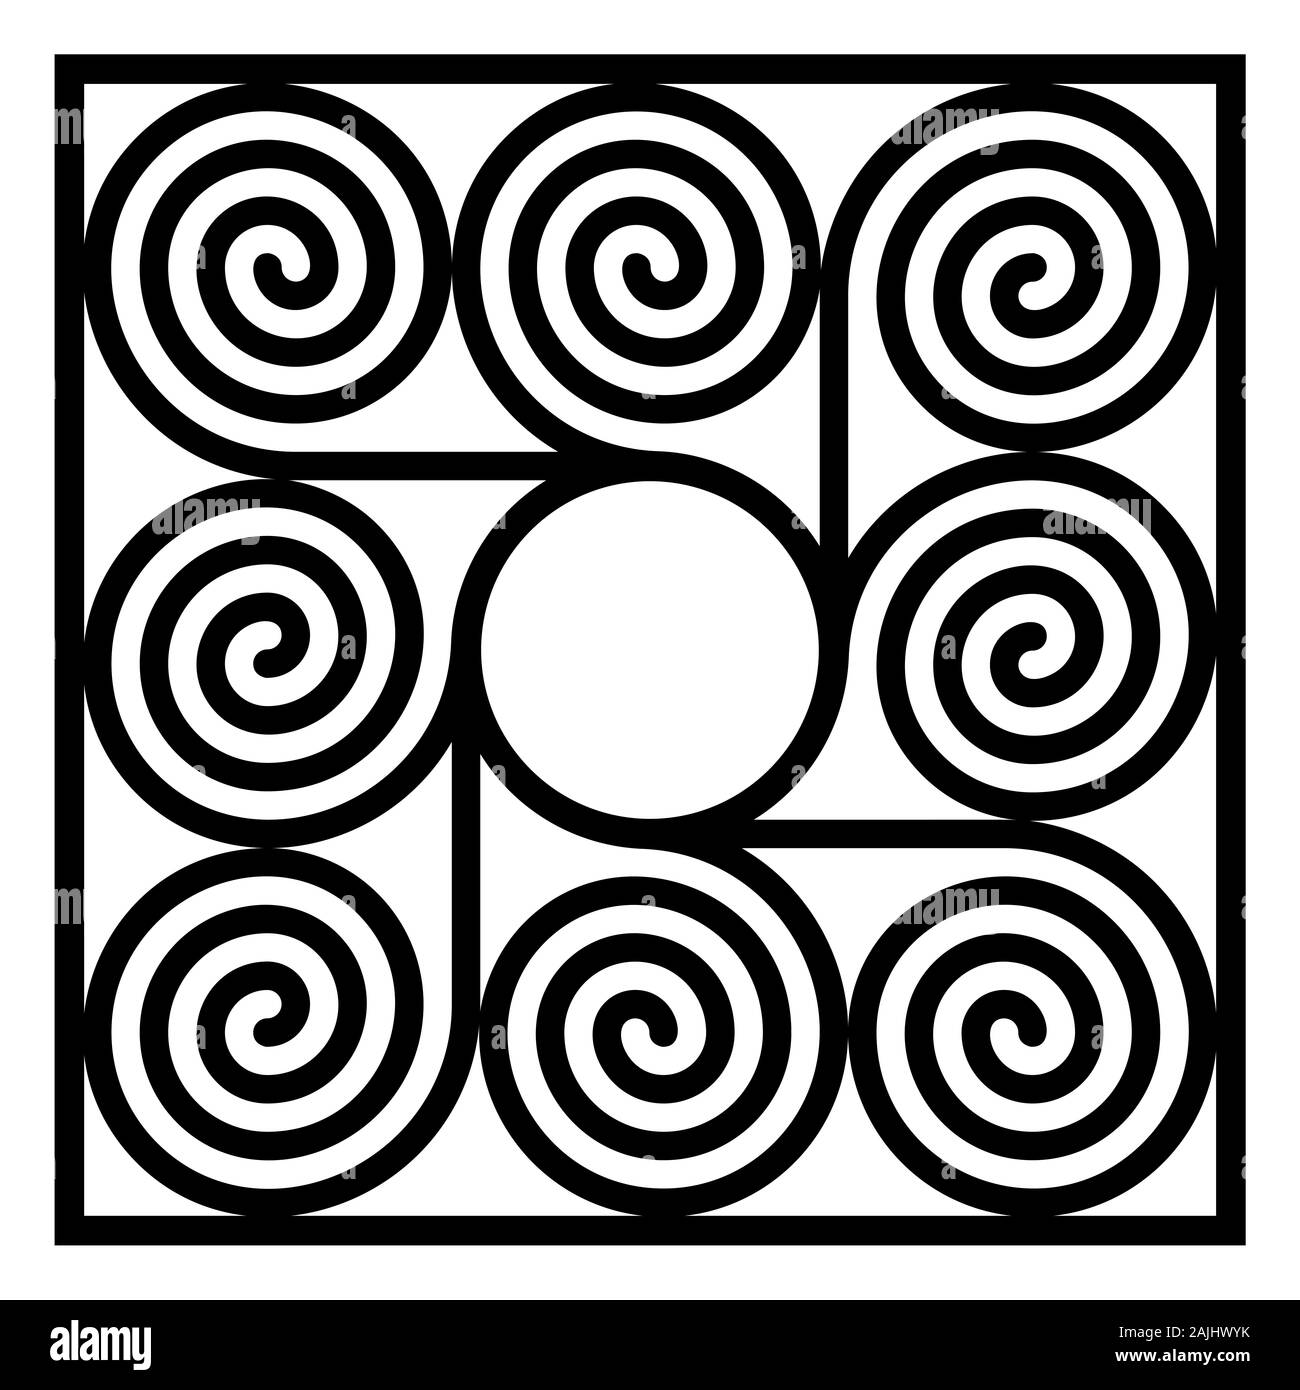 Quadratische Kachel von acht arithmetische Spiralen um einen Kreis. Muster der Archimedischen Spirale der gleichen Zeitabständen mit einem Kreis verbunden. Stockfoto